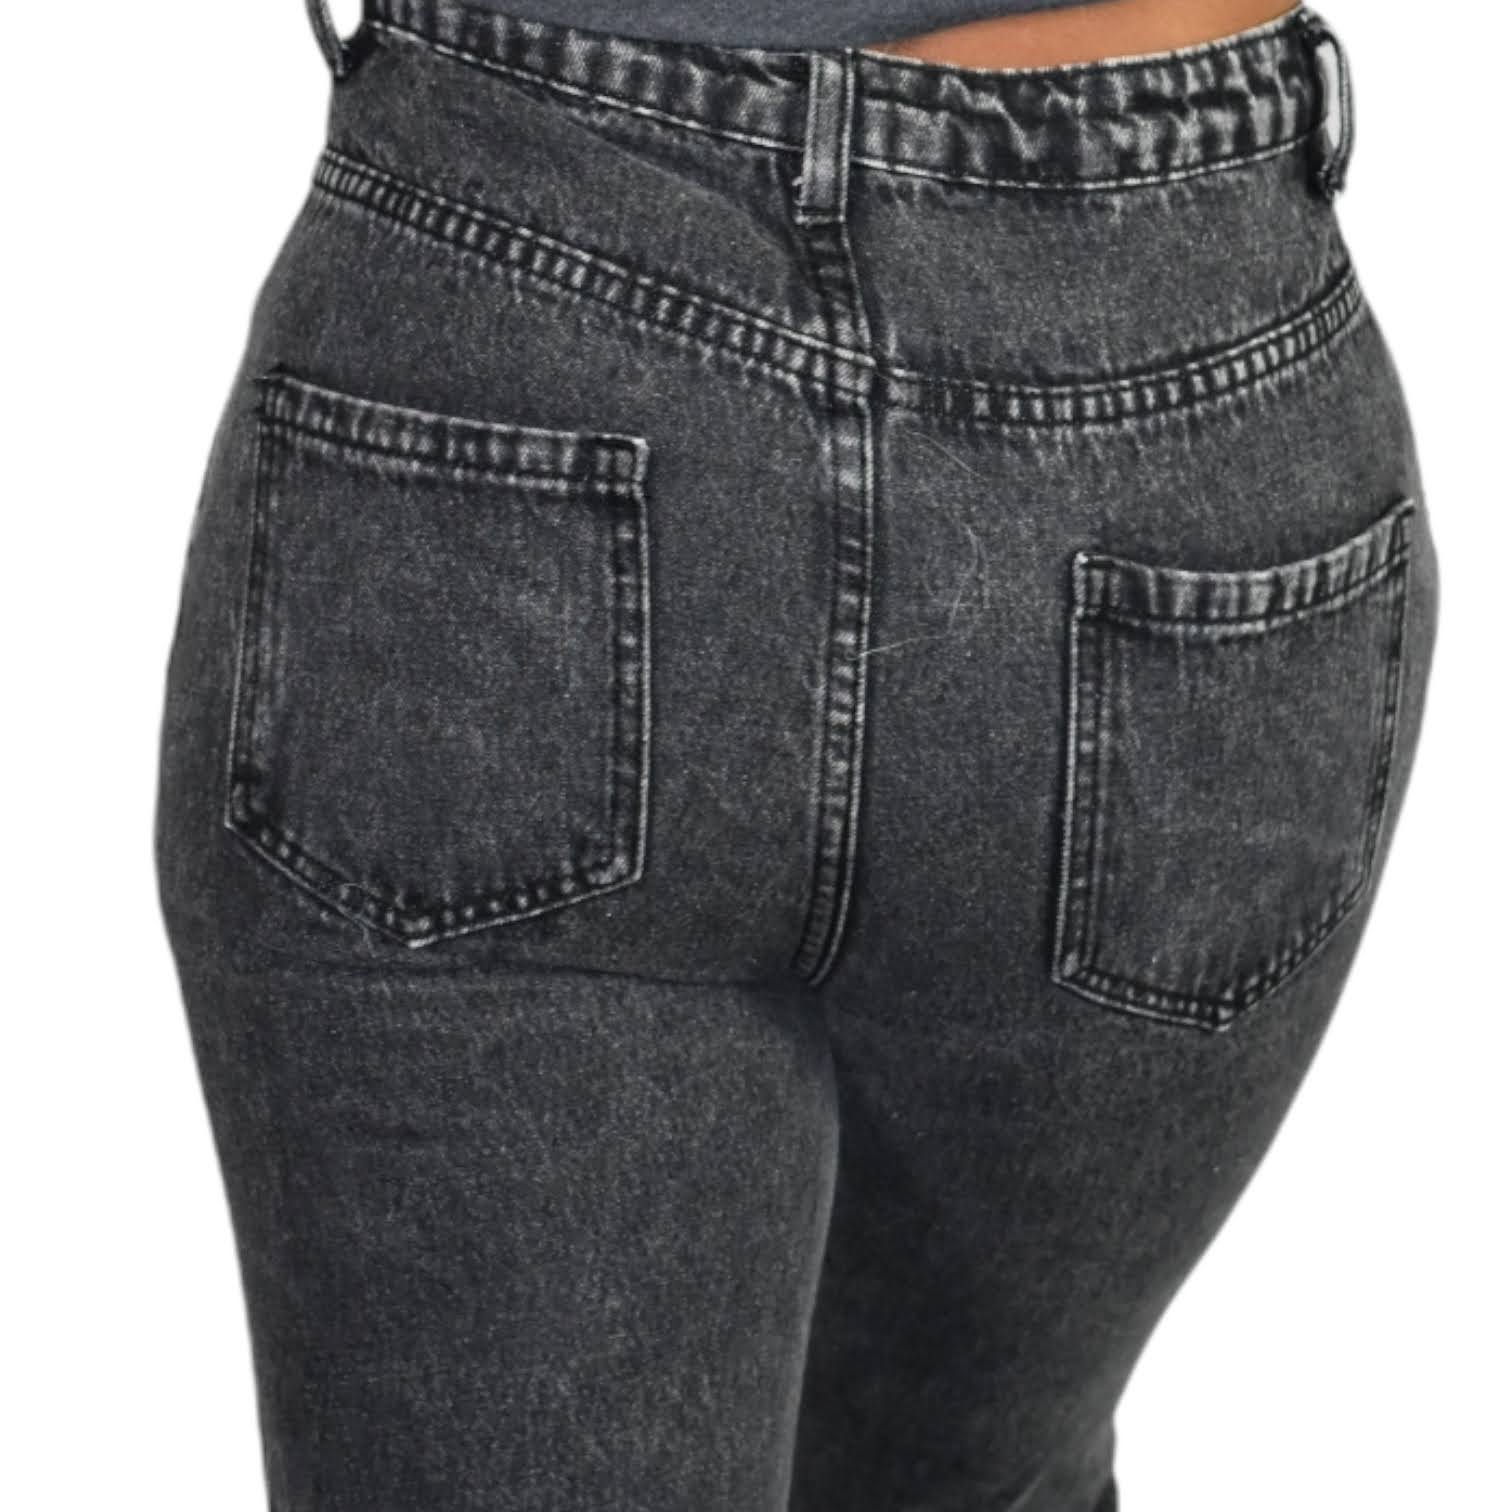 Lulus Black Stonewashed Mom Jeans Size Small